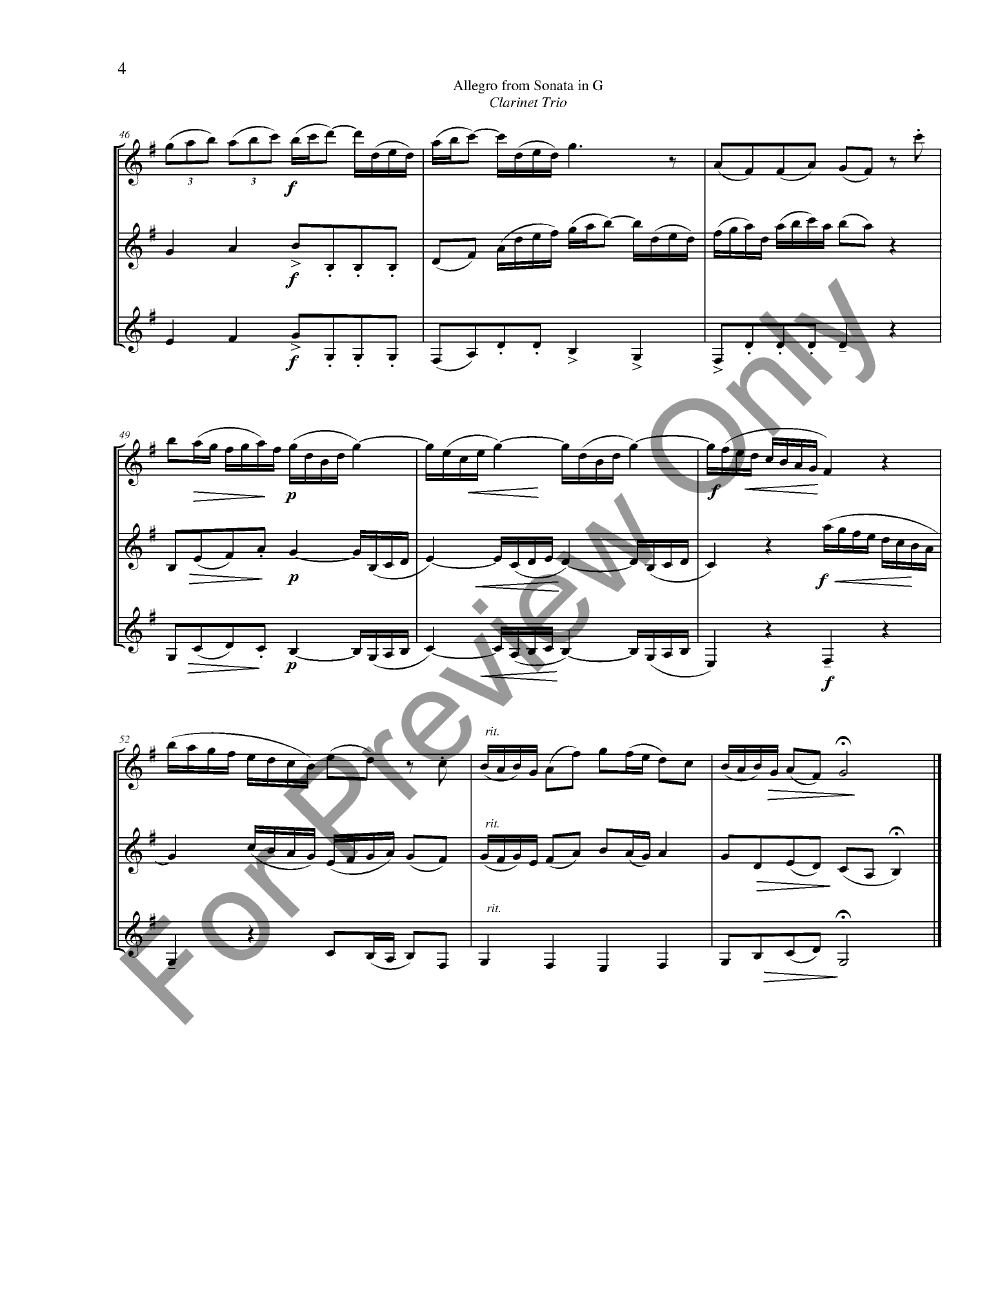 Allegro from Sonata in G Clarinet Trio P.O.D.